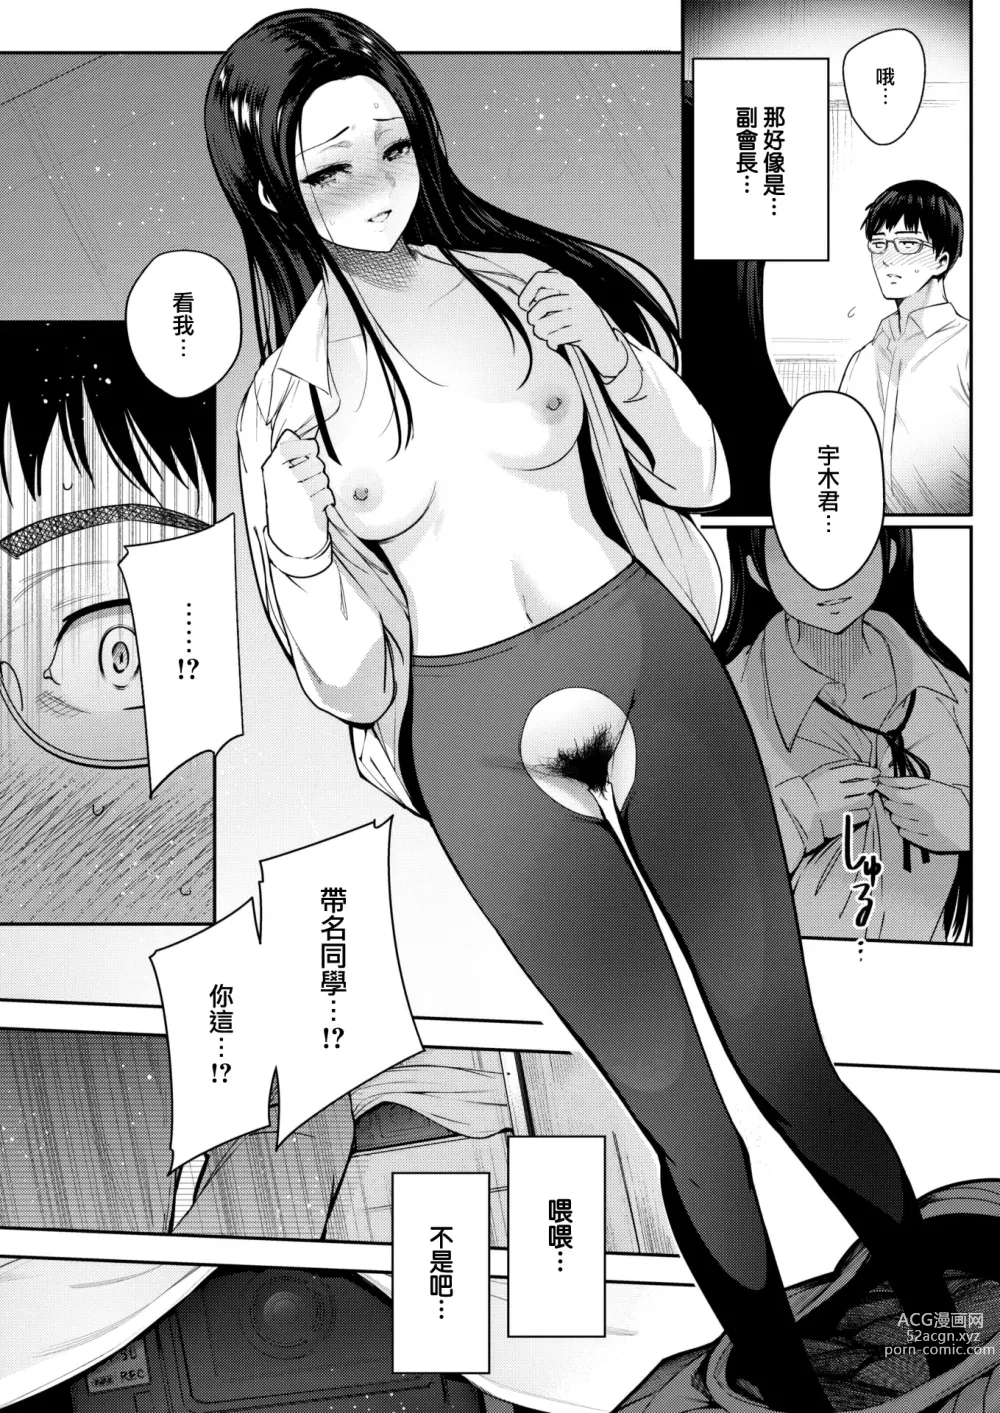 Page 17 of manga Kankou